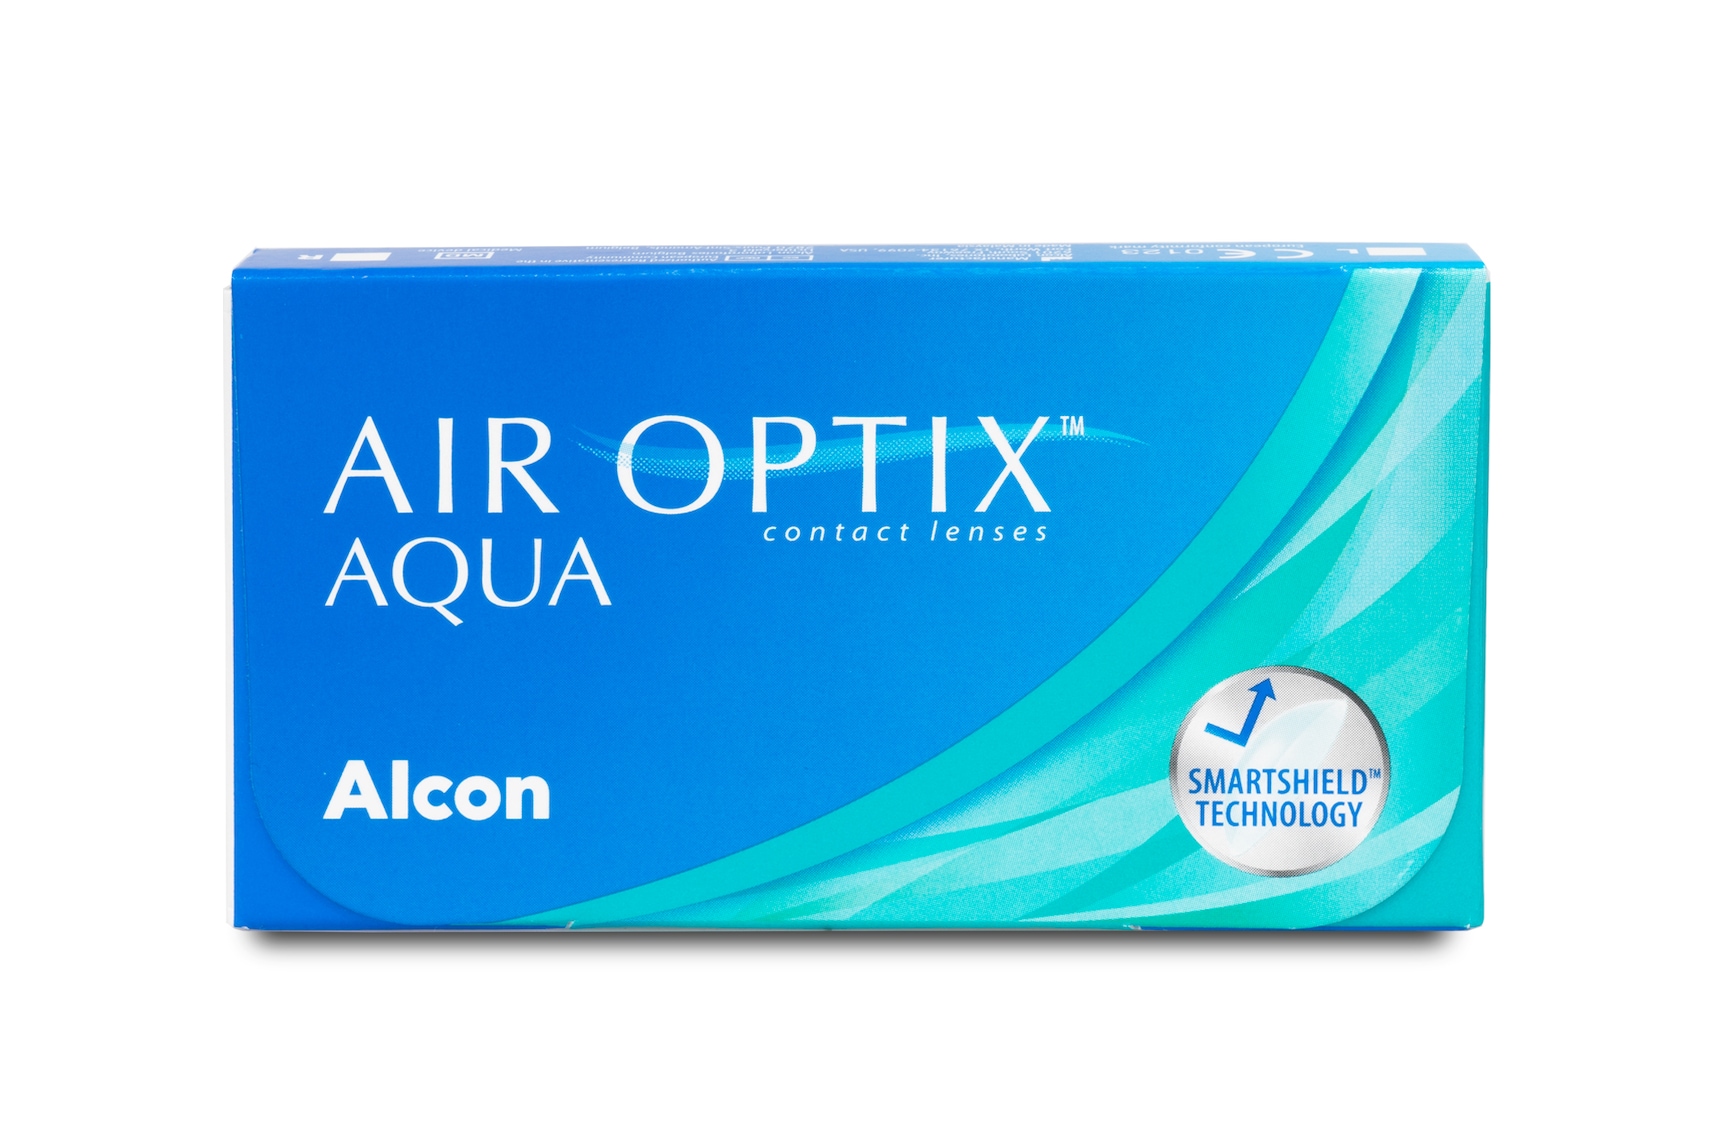 Air Optix AQUA